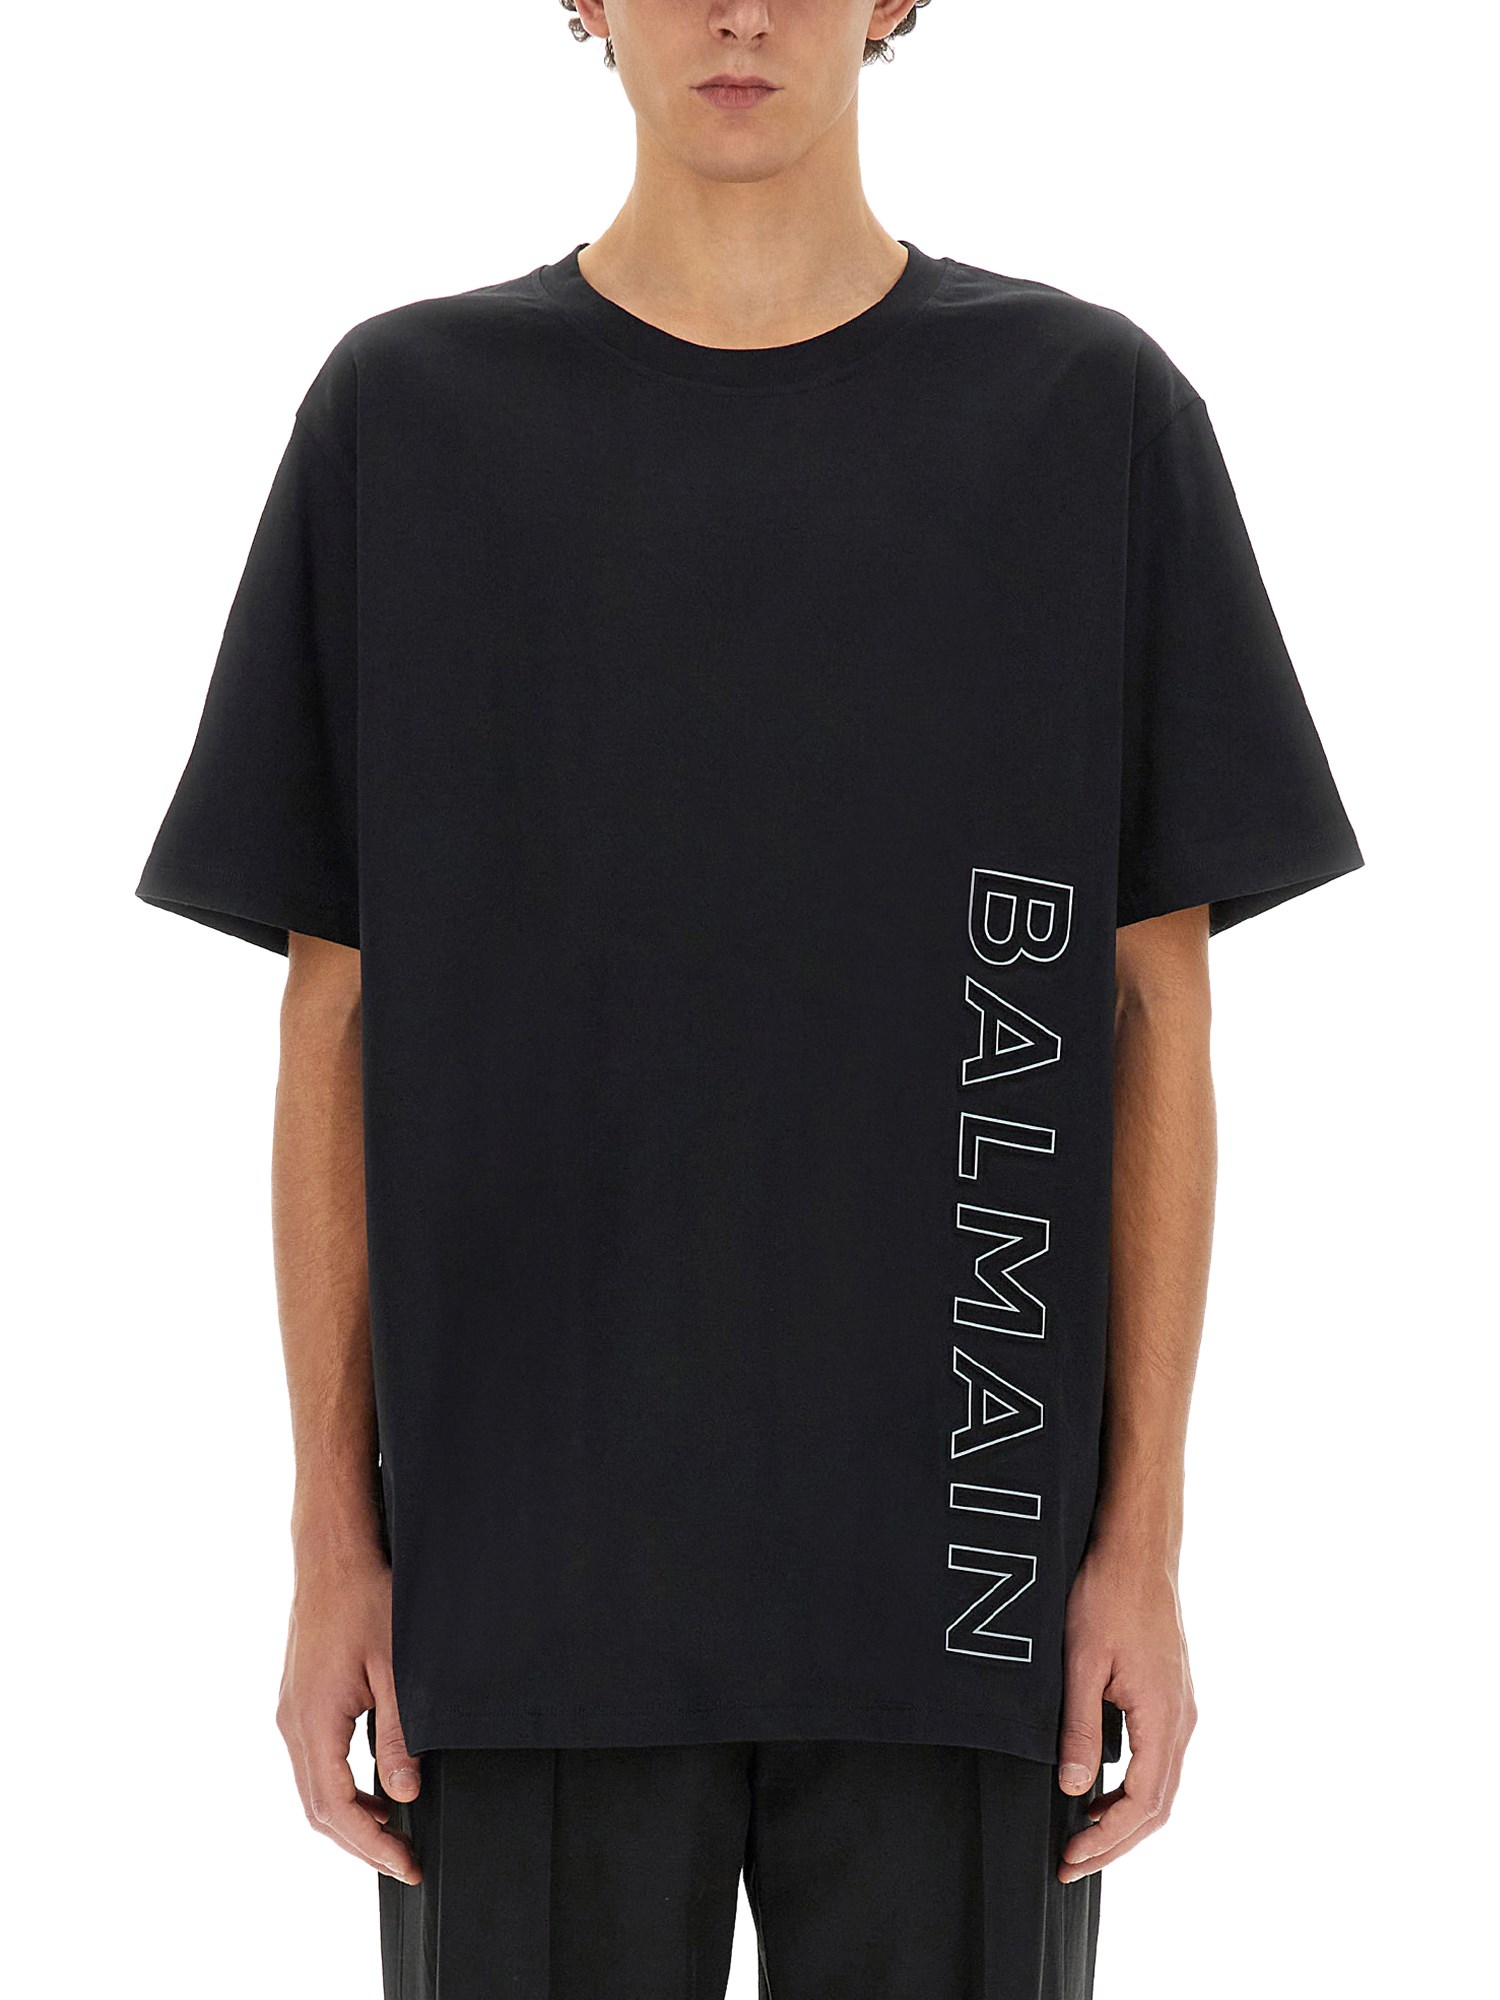 balmain t-shirt with logo